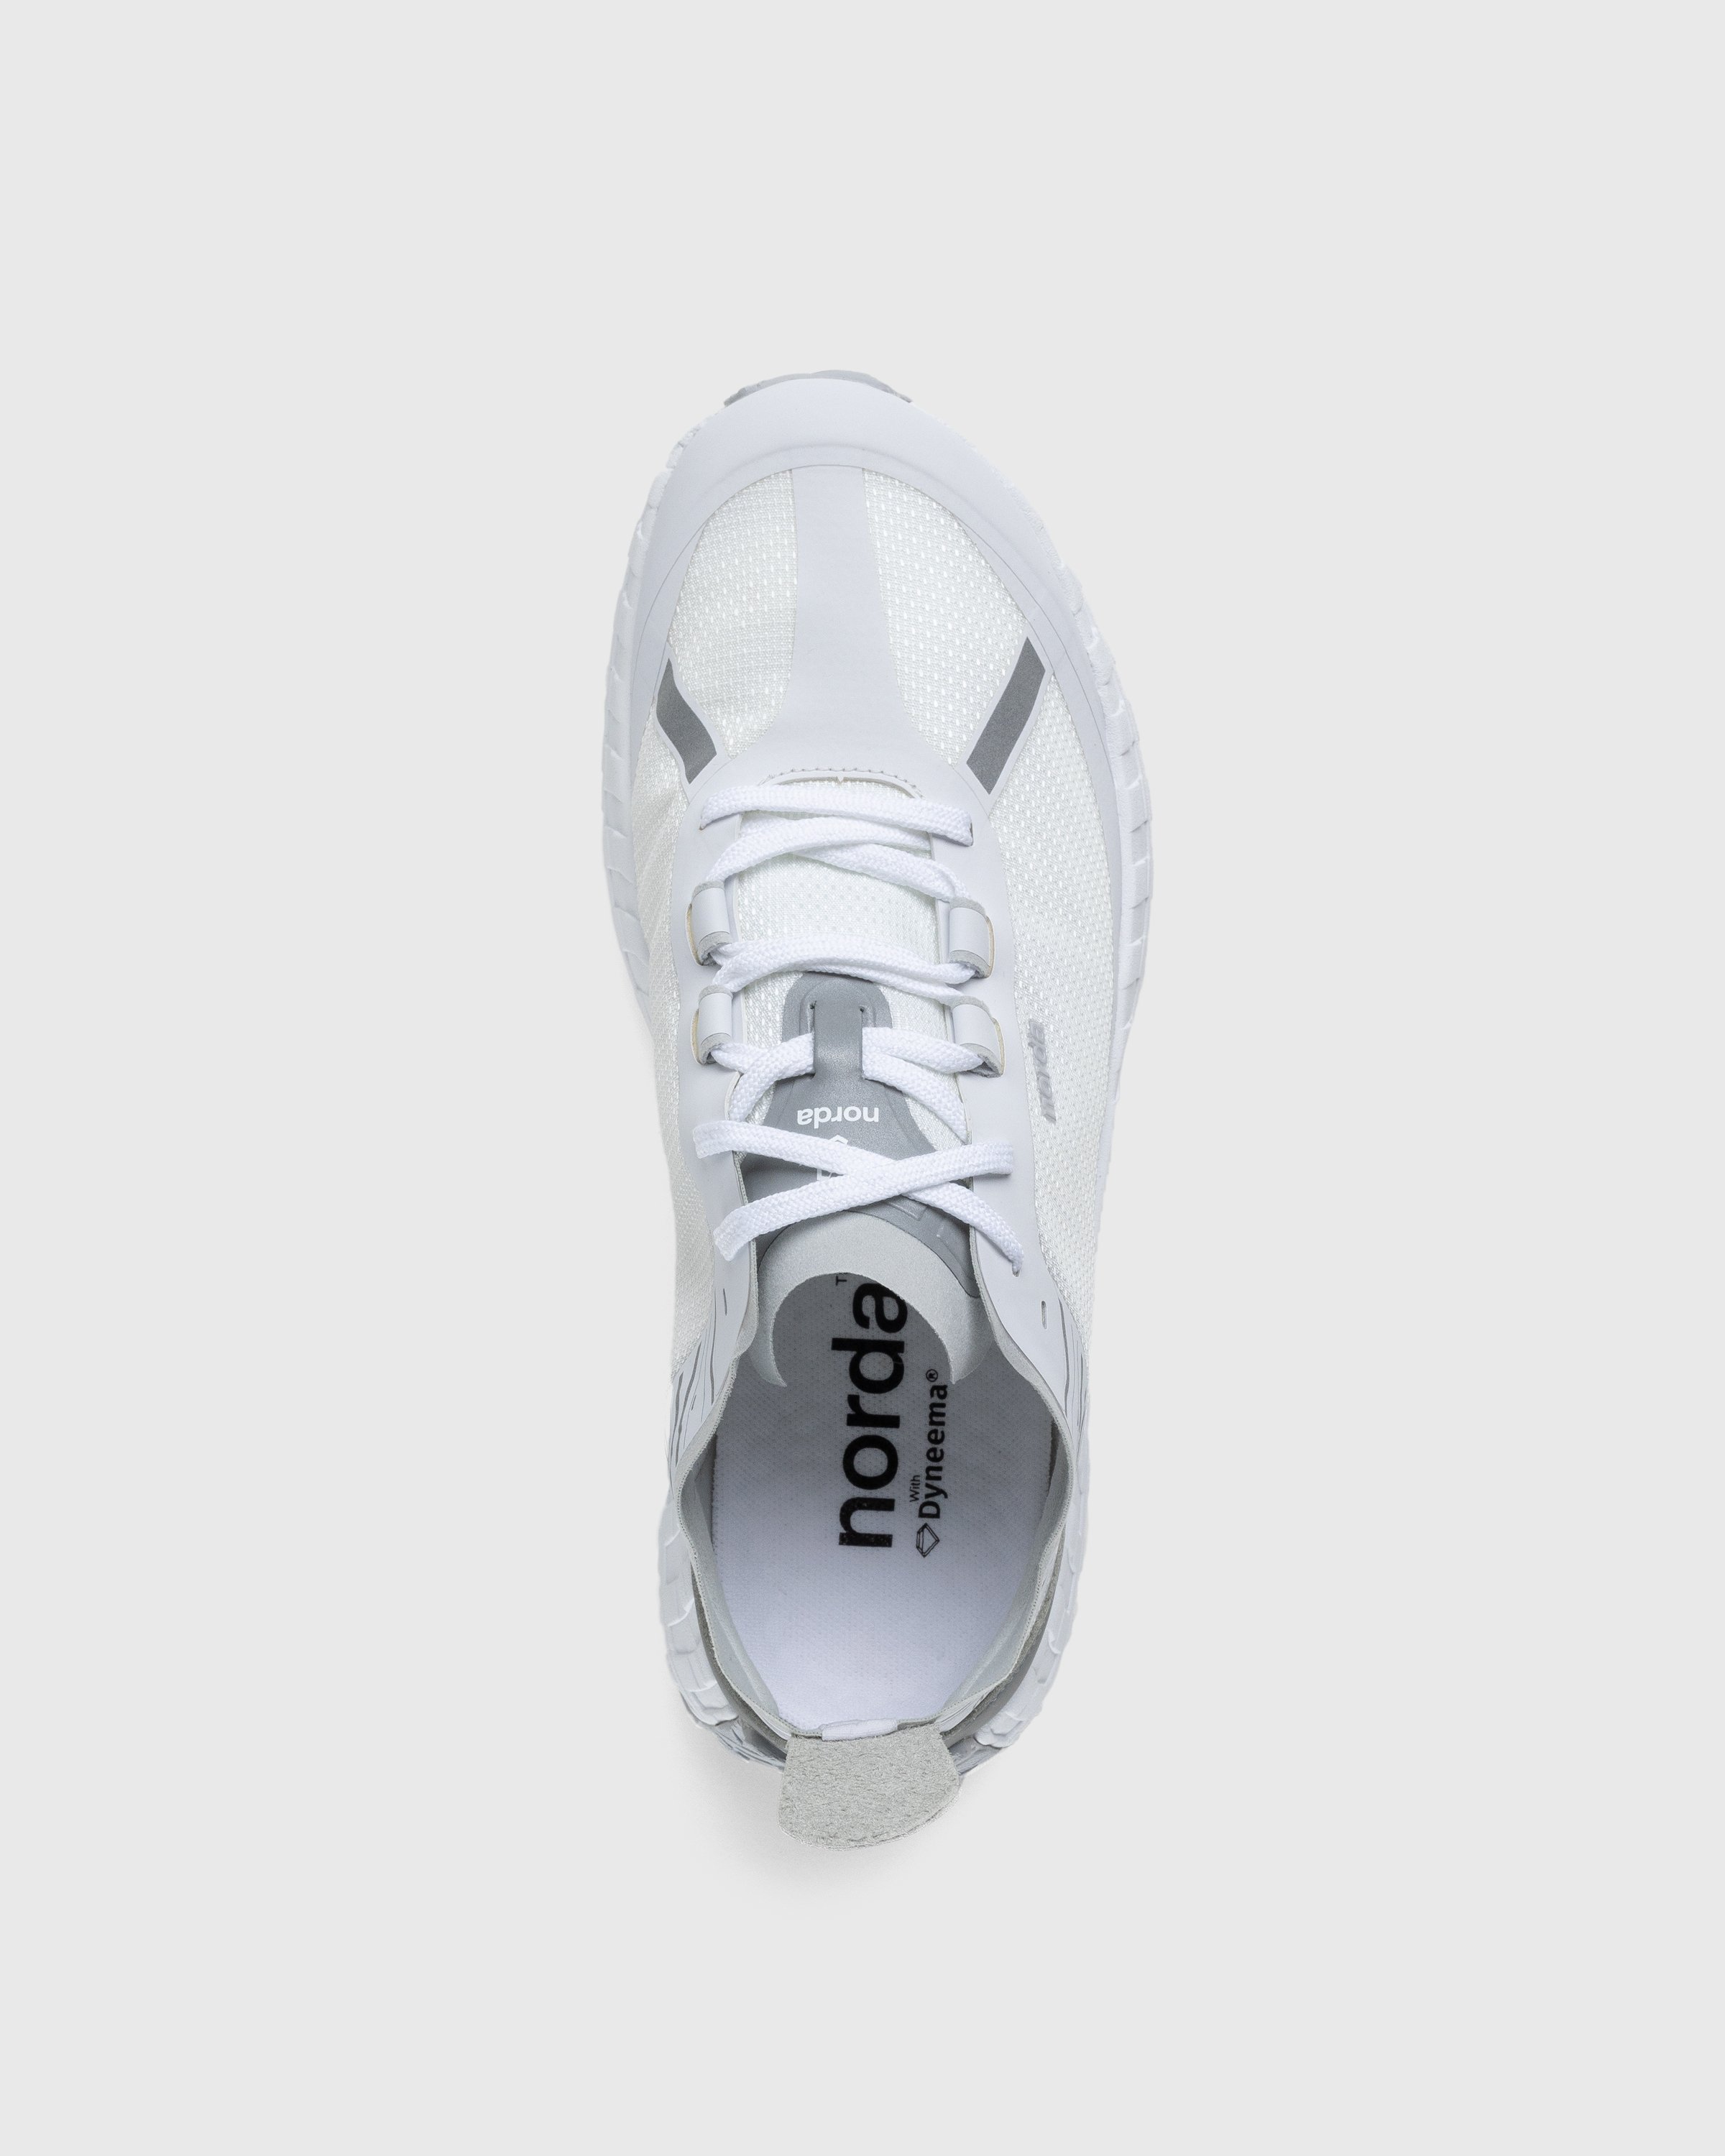 Norda - 001 M White/Grey - Footwear - White - Image 5